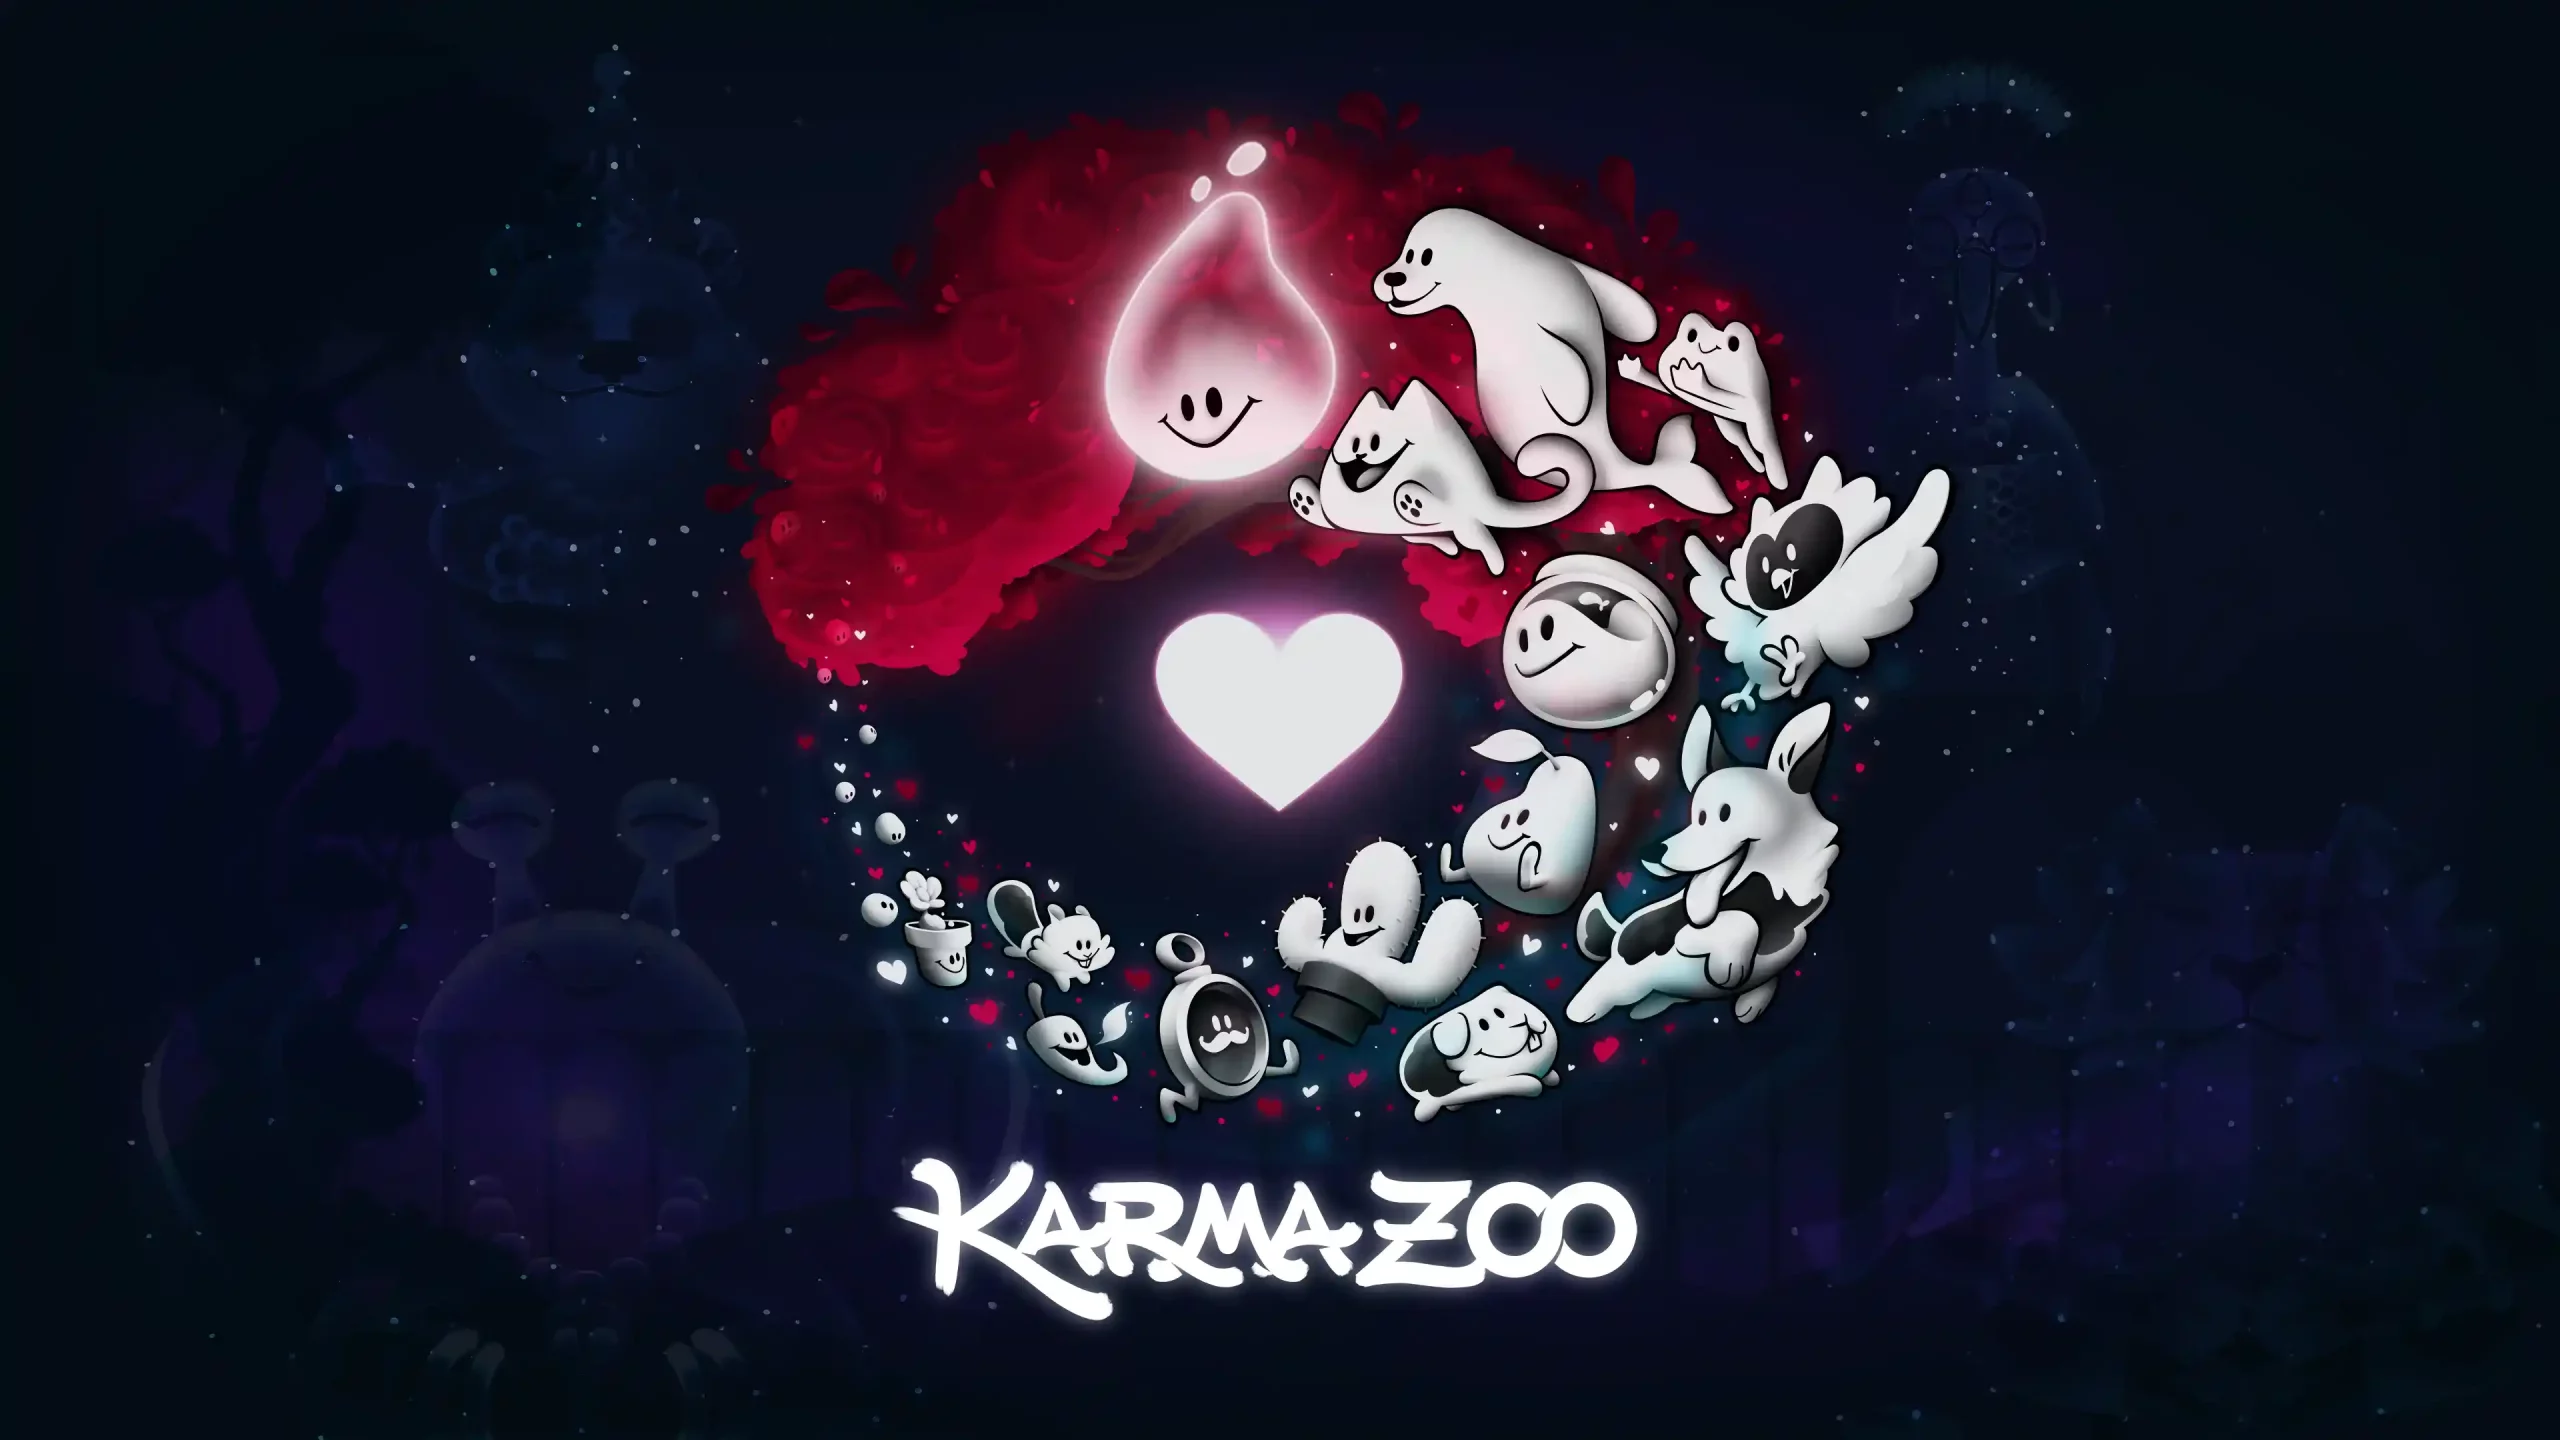 Devolver Digital anuncia KarmaZoo, un nou títol cooperatiu